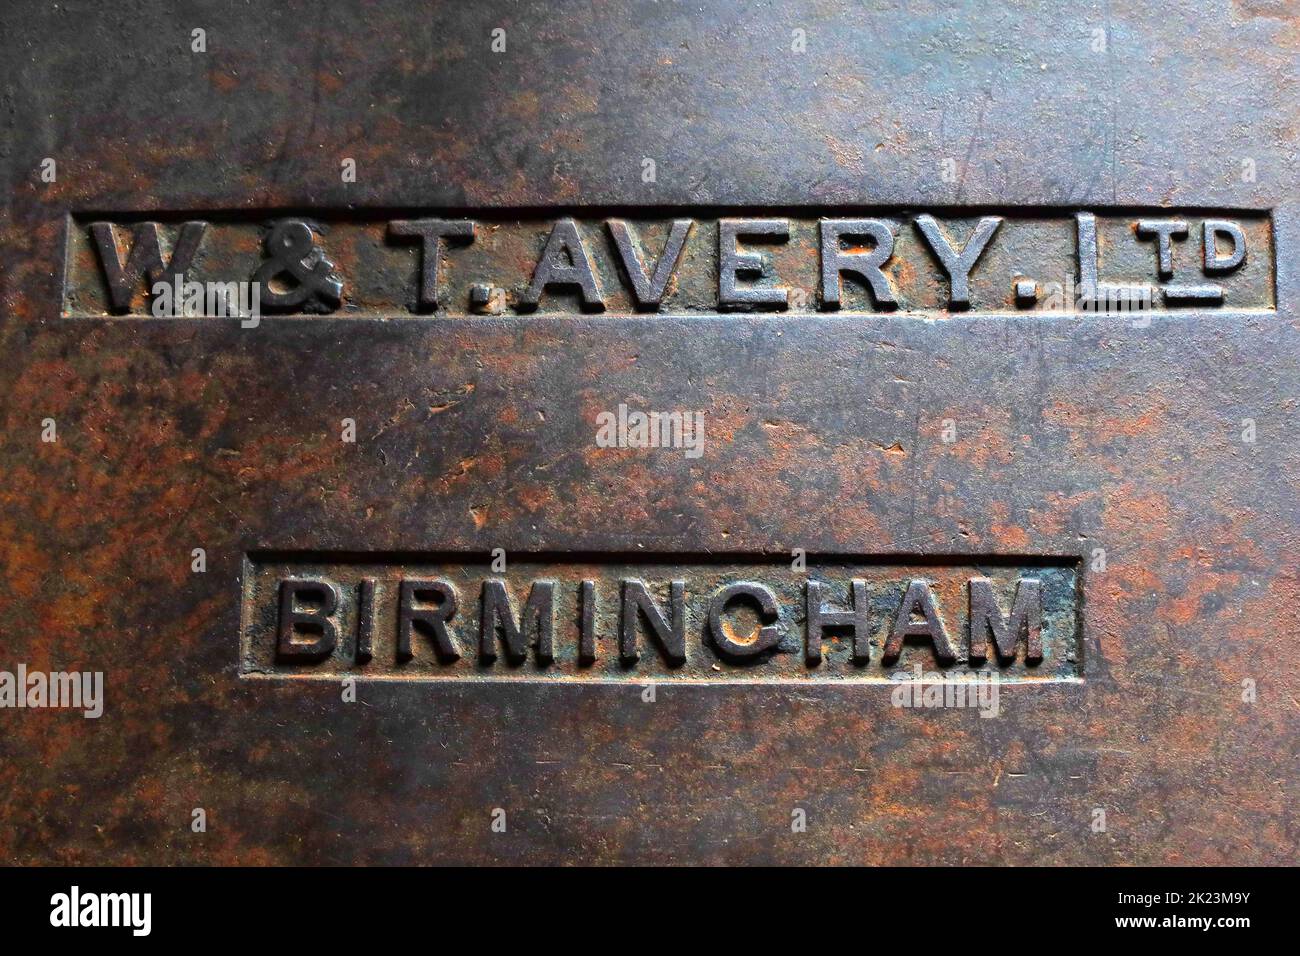 WT Avery Ltd, Birmingham - appareil de pesage Banque D'Images